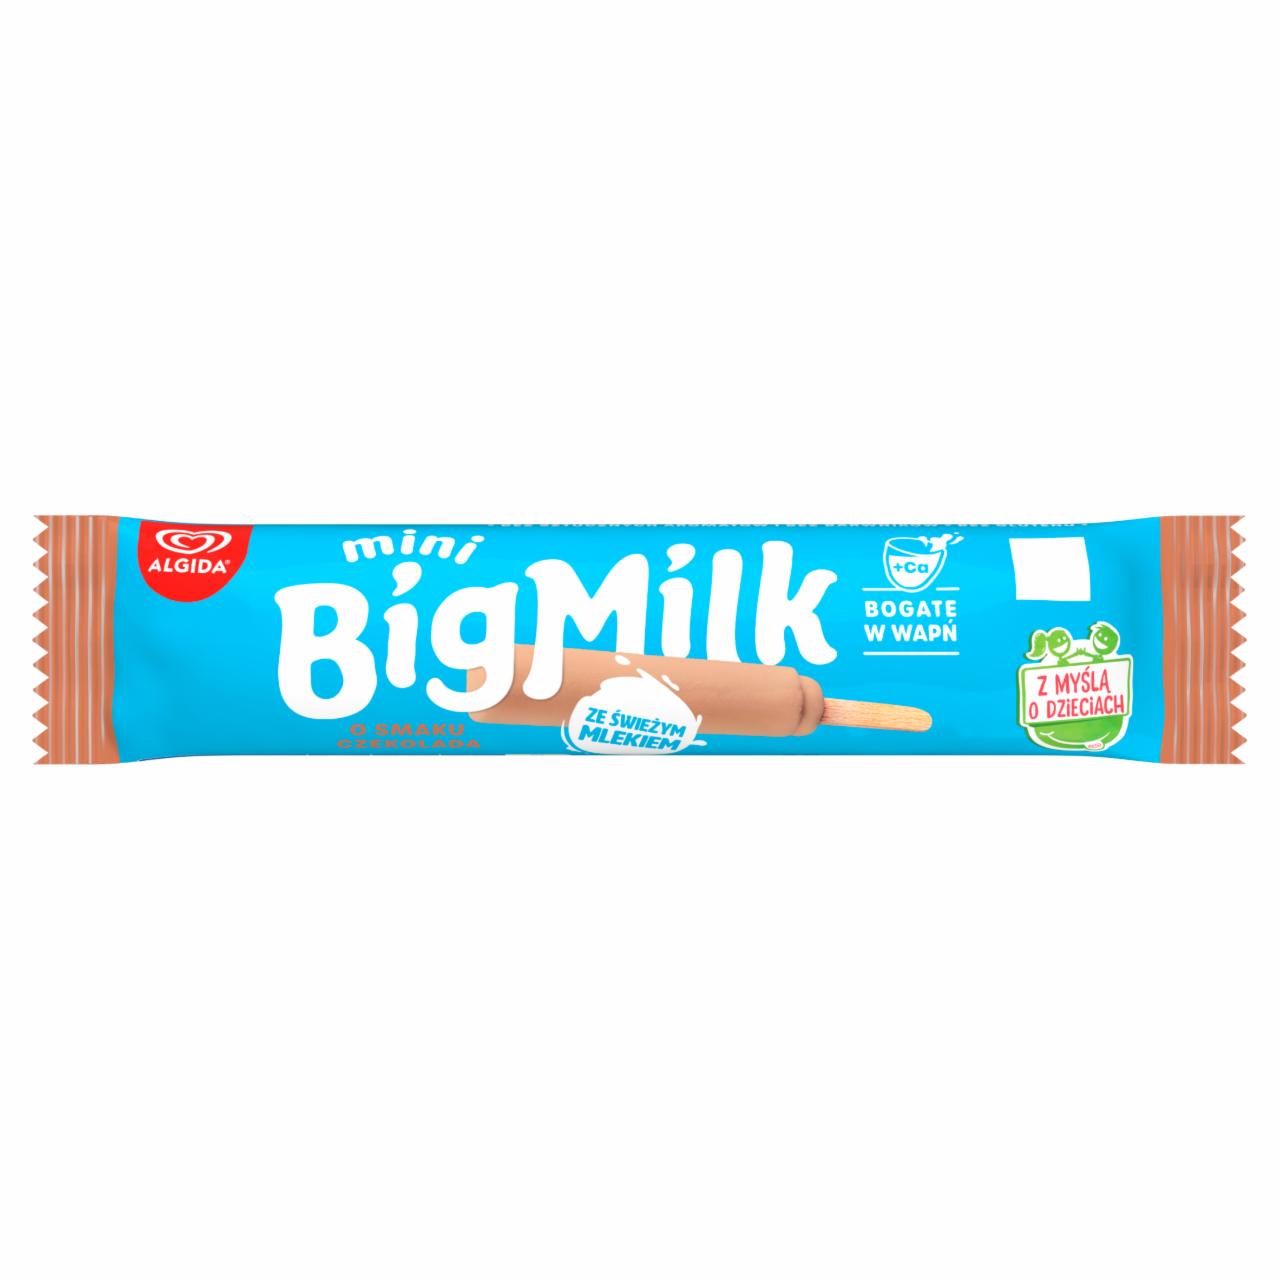 Photo - Big Milk Mini Chocolate Flavored Ice Cream 35 ml